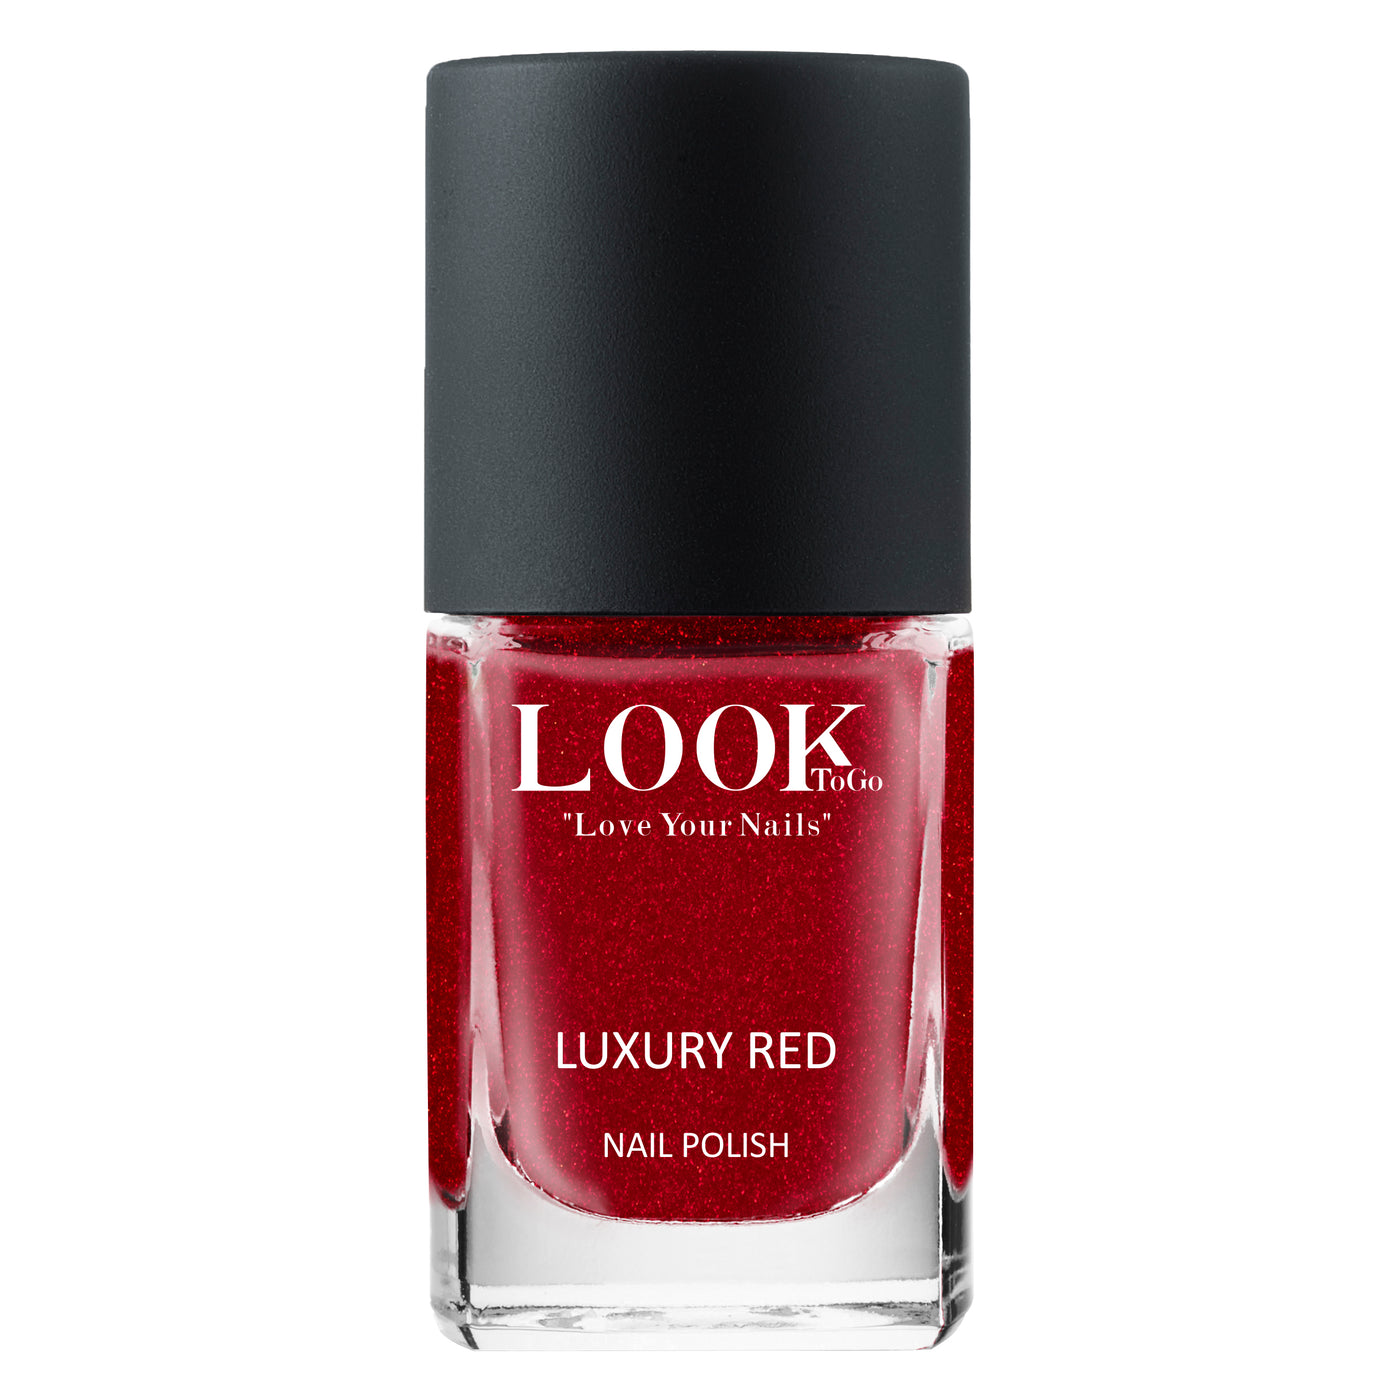 Luxury Red